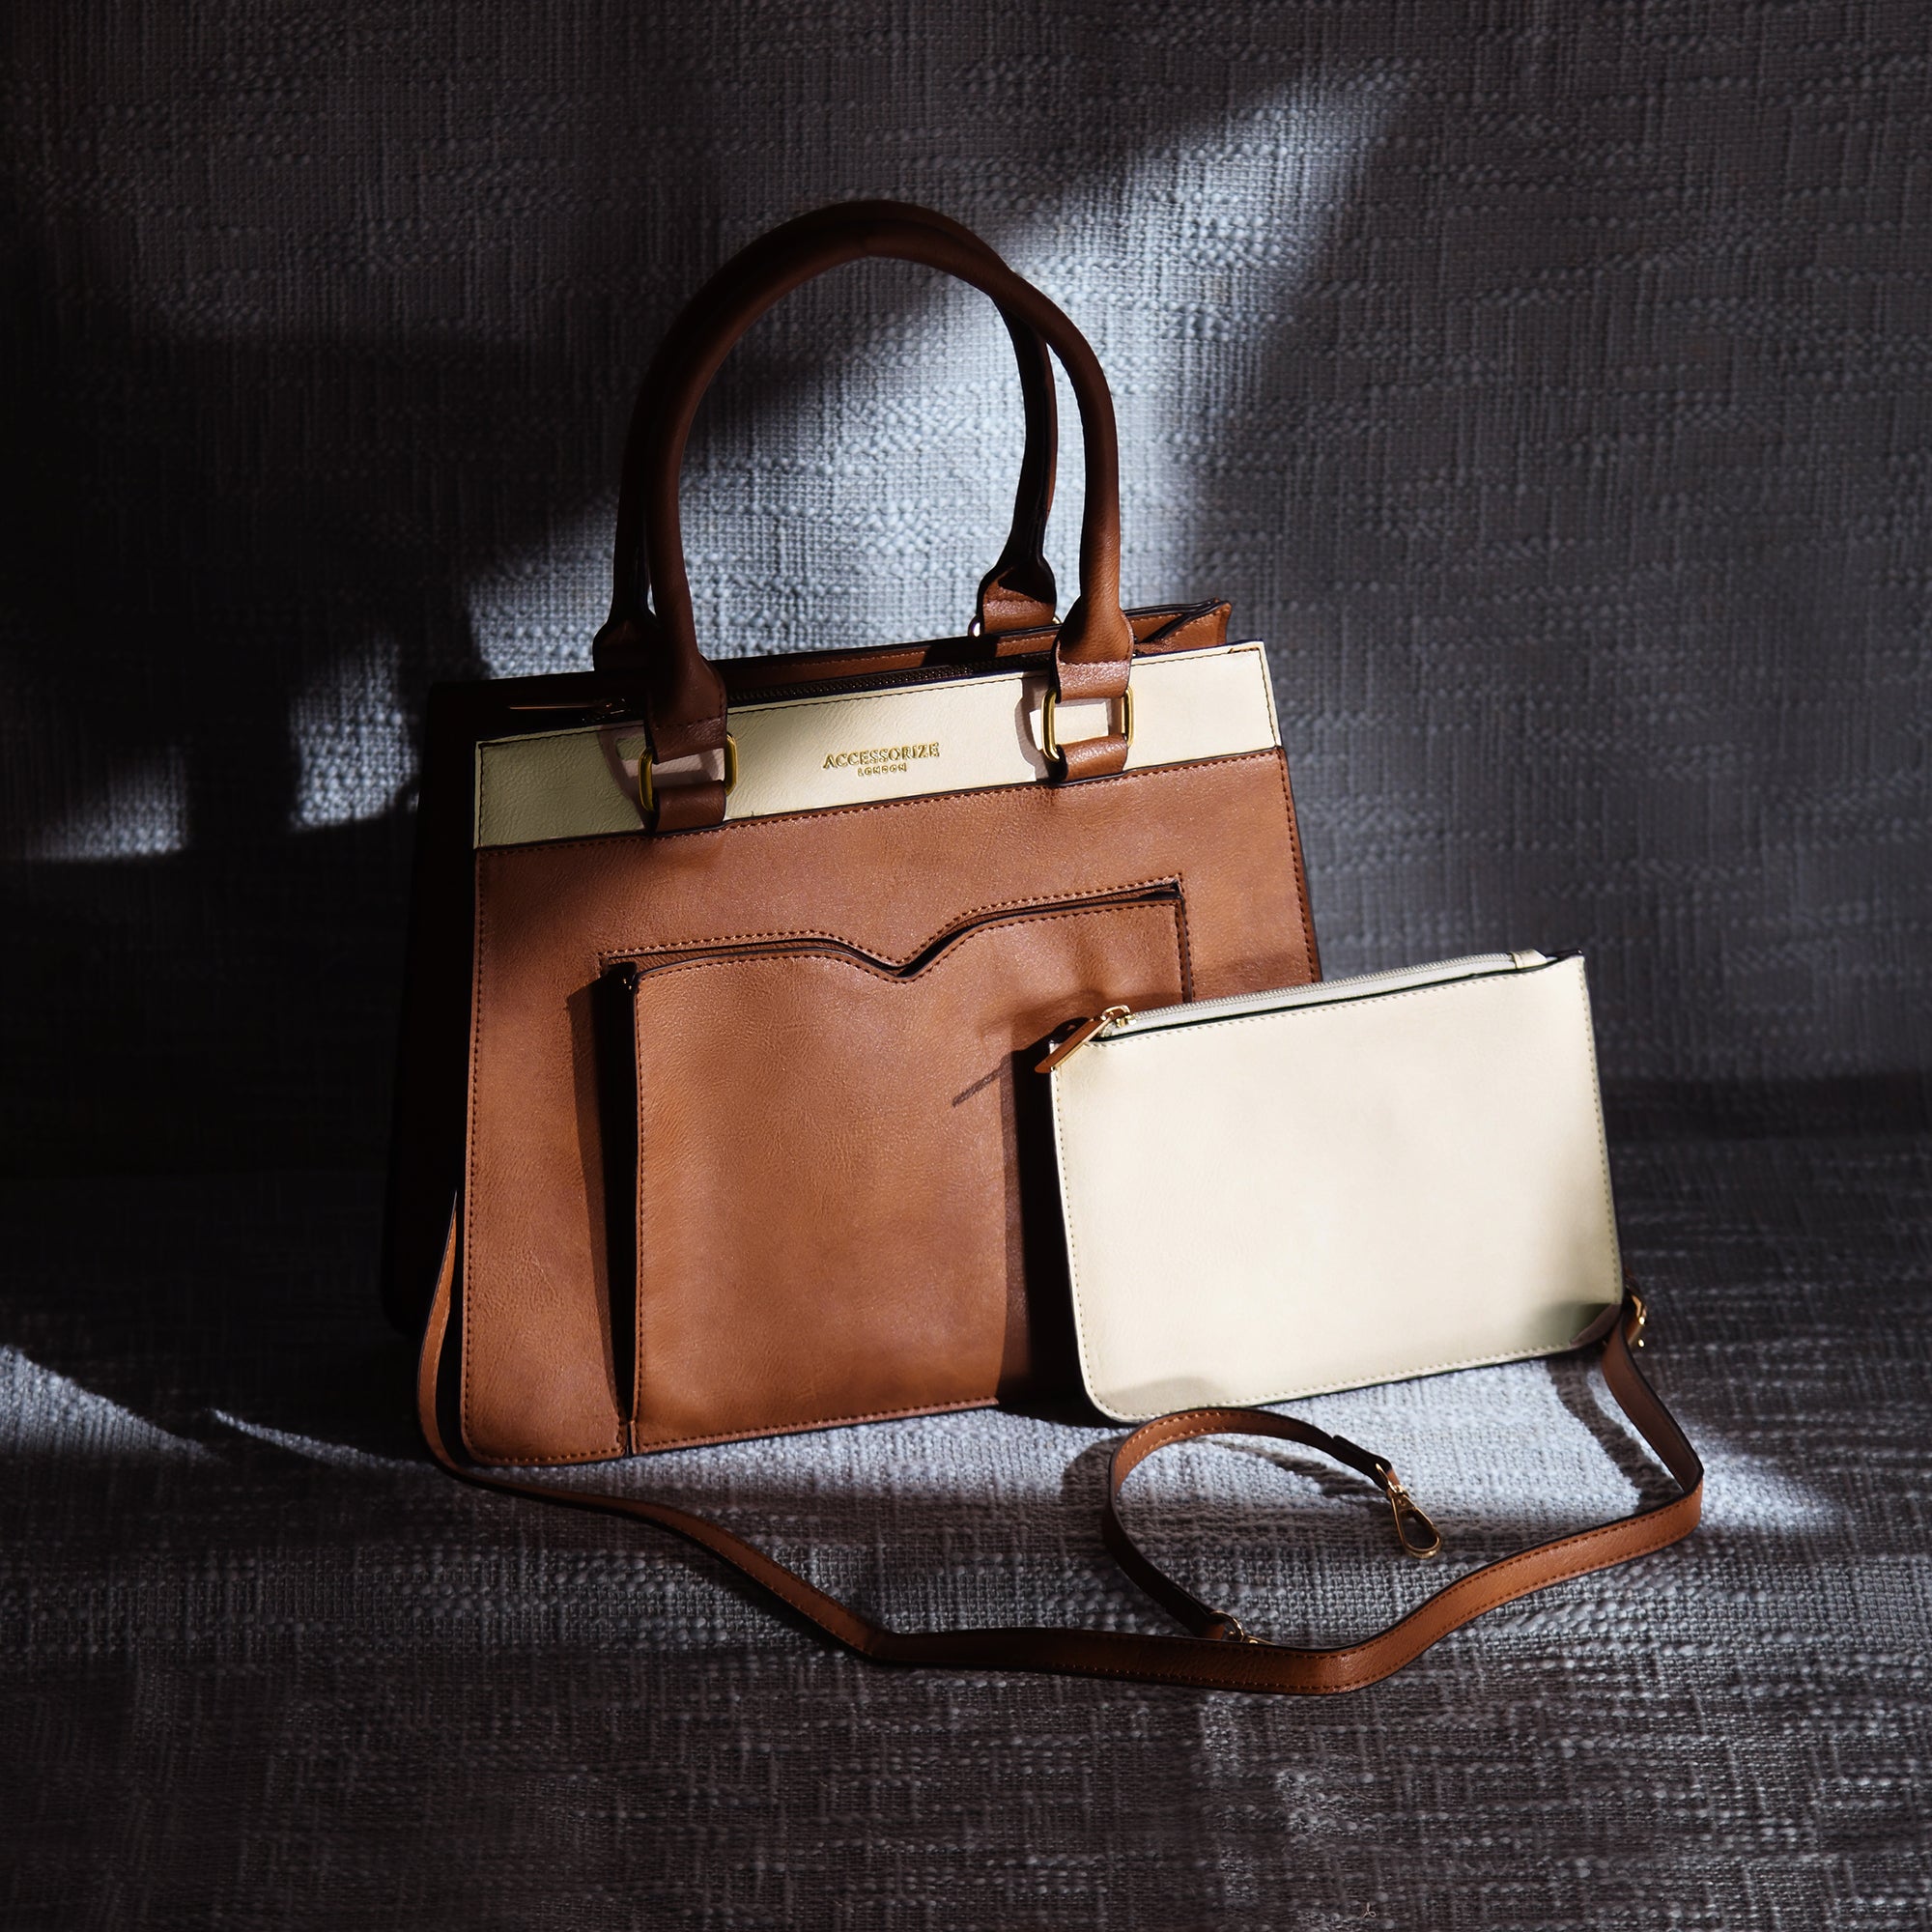 Accessorize London Women's Faux Leather Tan Athena Color Block handheld Bag